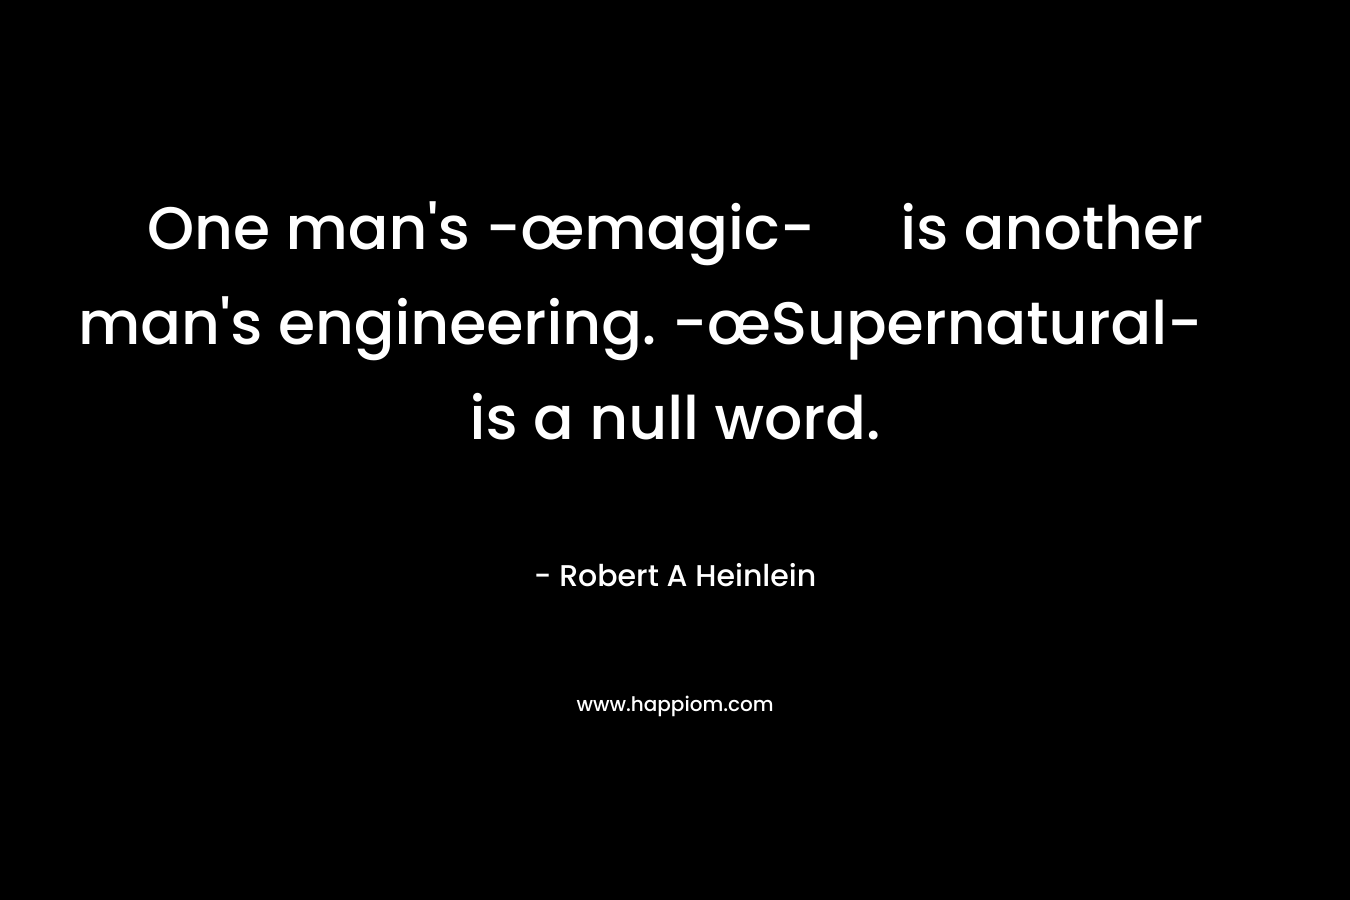 One man's -œmagic- is another man's engineering. -œSupernatural- is a null word.